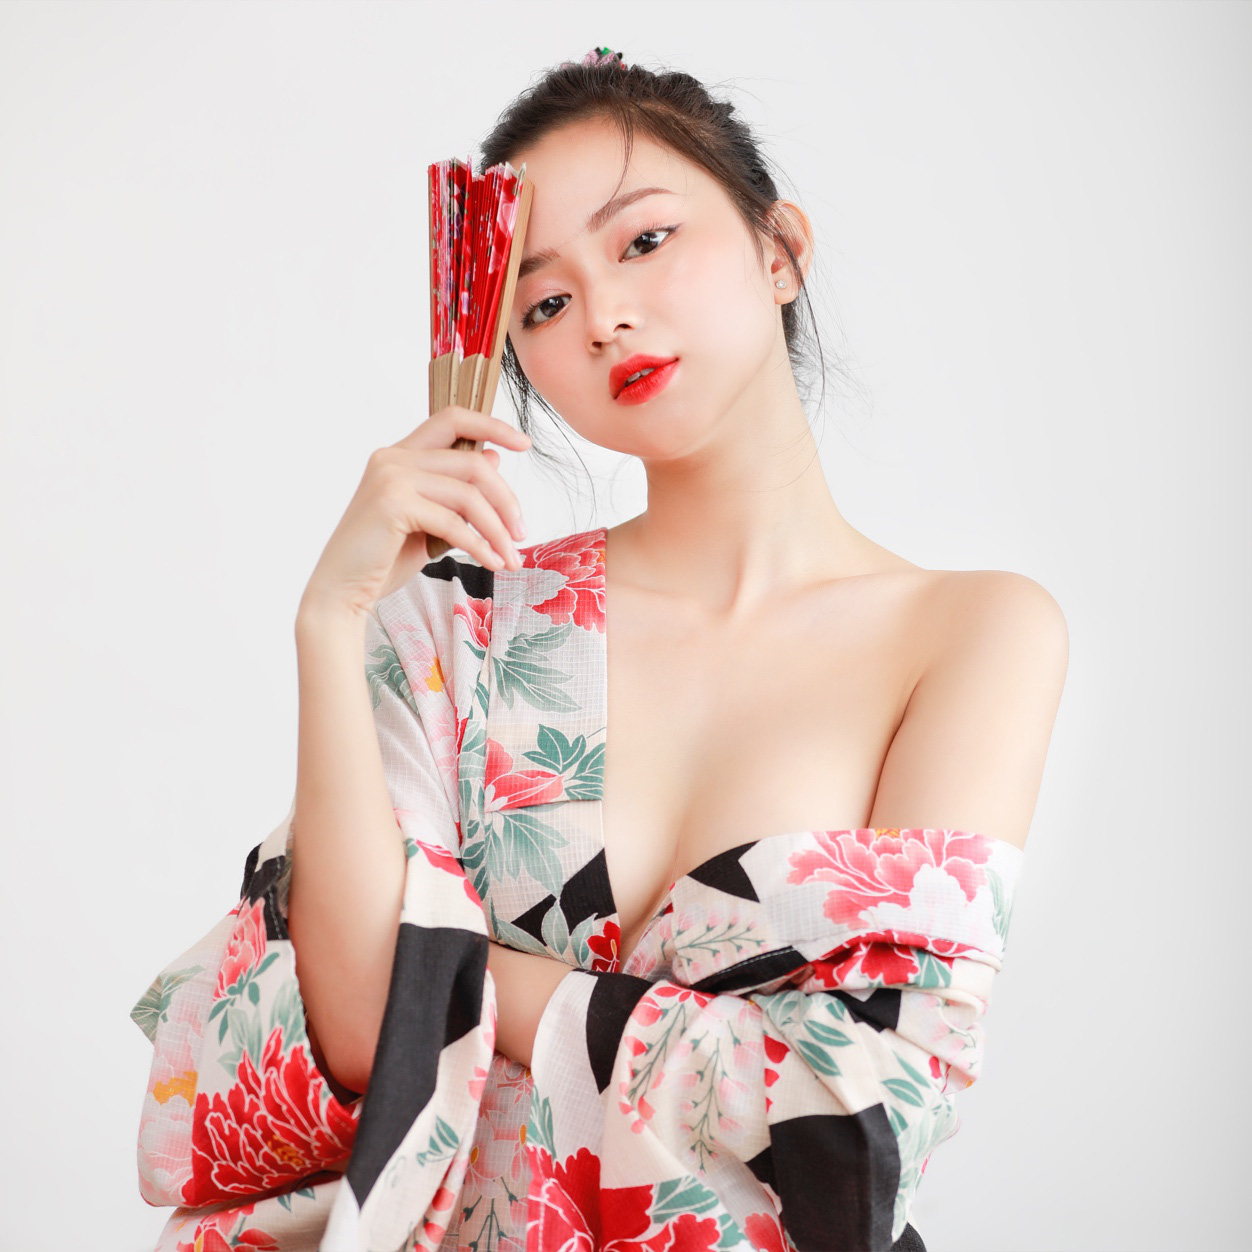 Bóng hồng streamer sinh năm 1999 lần đầu mặc kimono nóng bỏng, ai nấy đều ngỡ ngàng vì quá xinh - Ảnh 3.